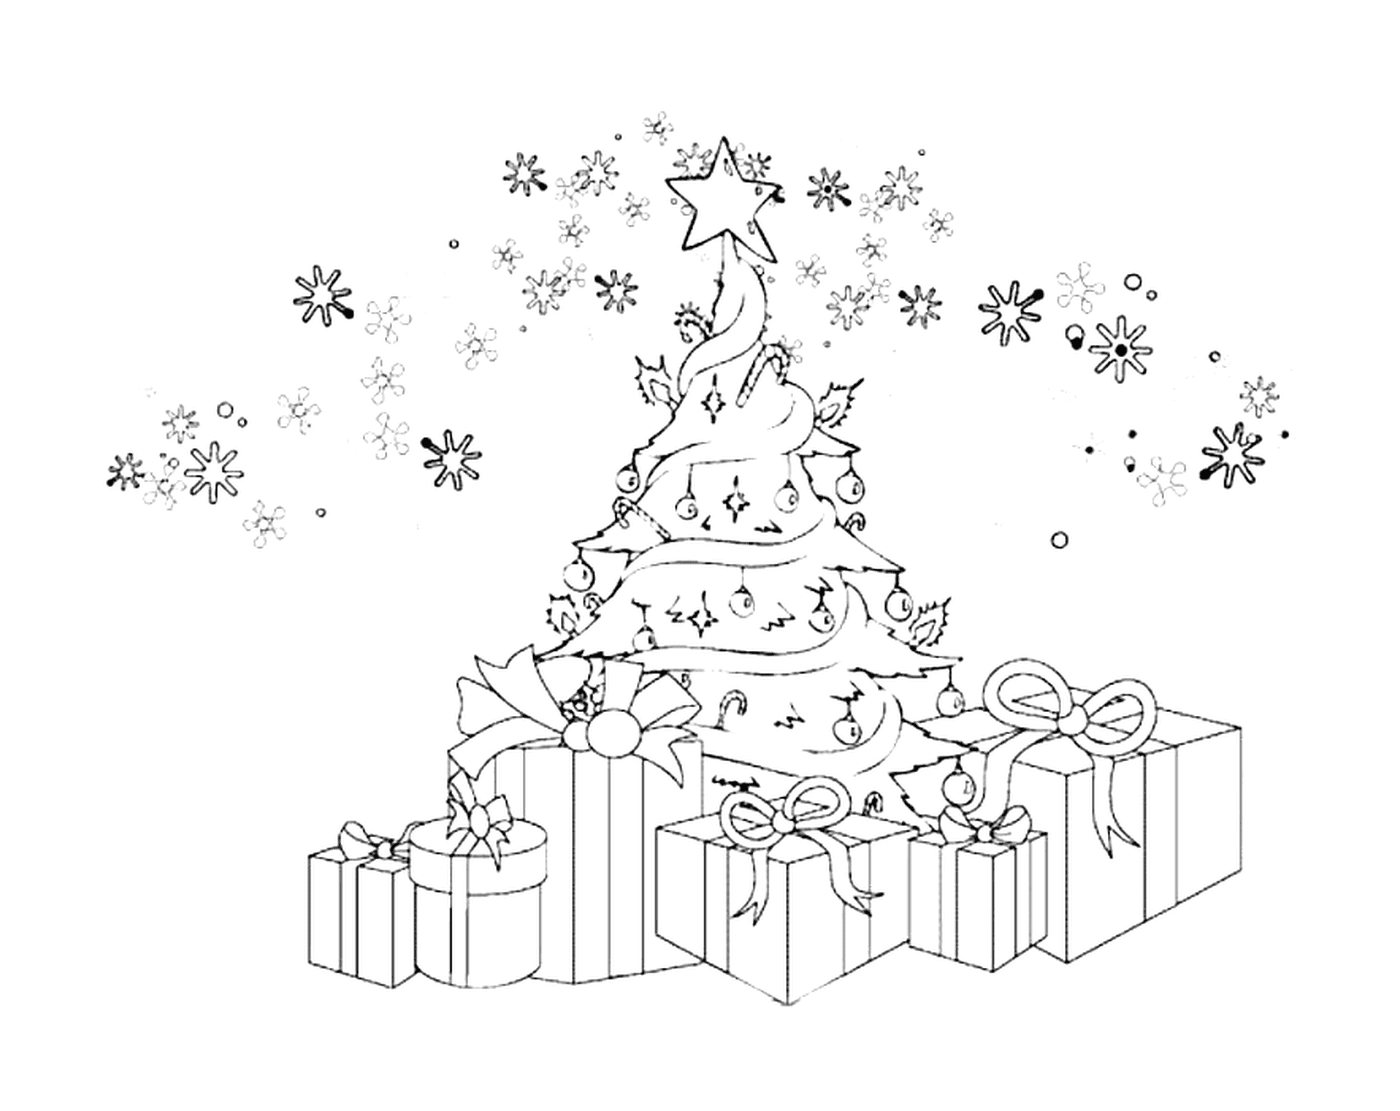  क्रिसमस के पेड़ में तोहफे और बर्फ के टुकड़े - टुकड़े होते हैं 